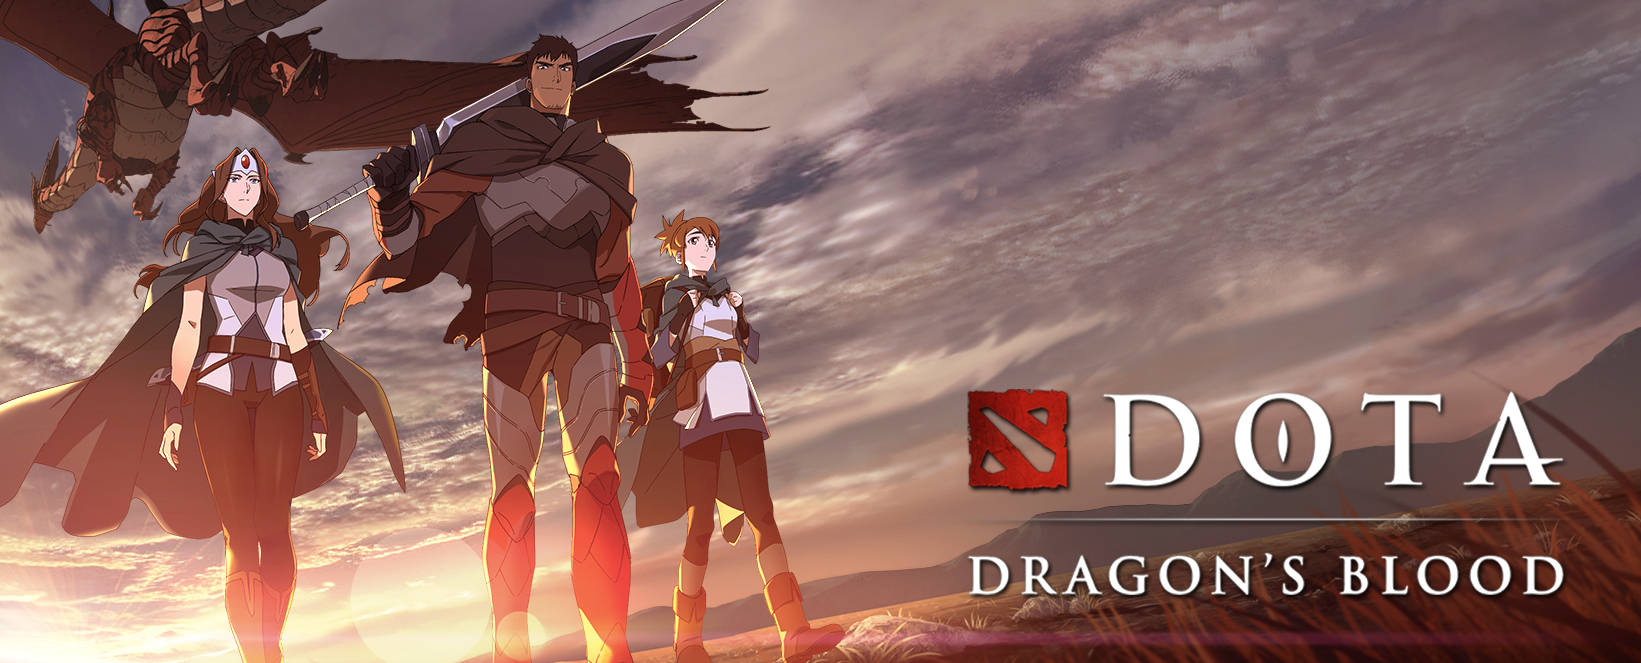 Dota Dragon's Blood อนิเมชั่นจากเกม Dota 2 เตรียมฉายบน Netflix 25  มีนาคมนี้ !! | 4Gamers